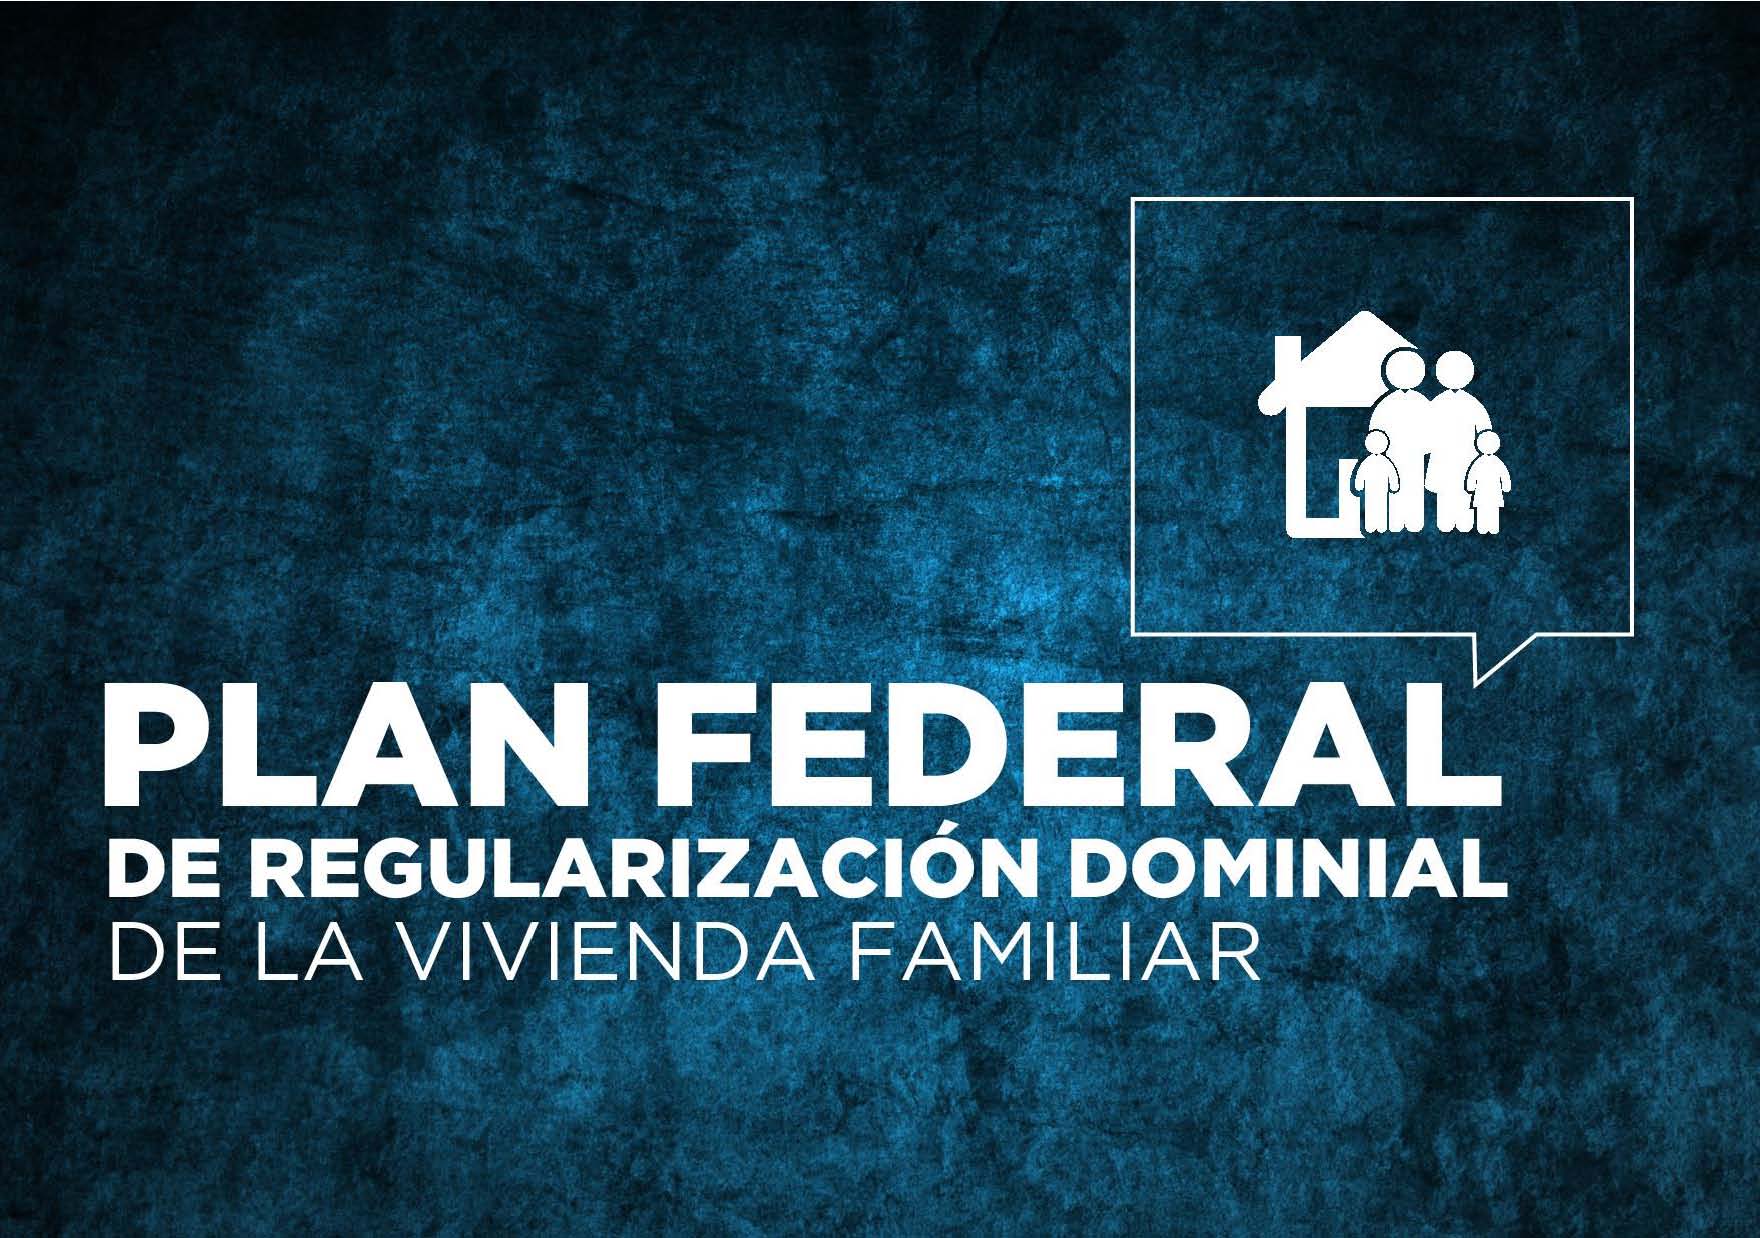 Presentamos el Plan Federal de Regularización Dominial de la Vivienda Familiar 